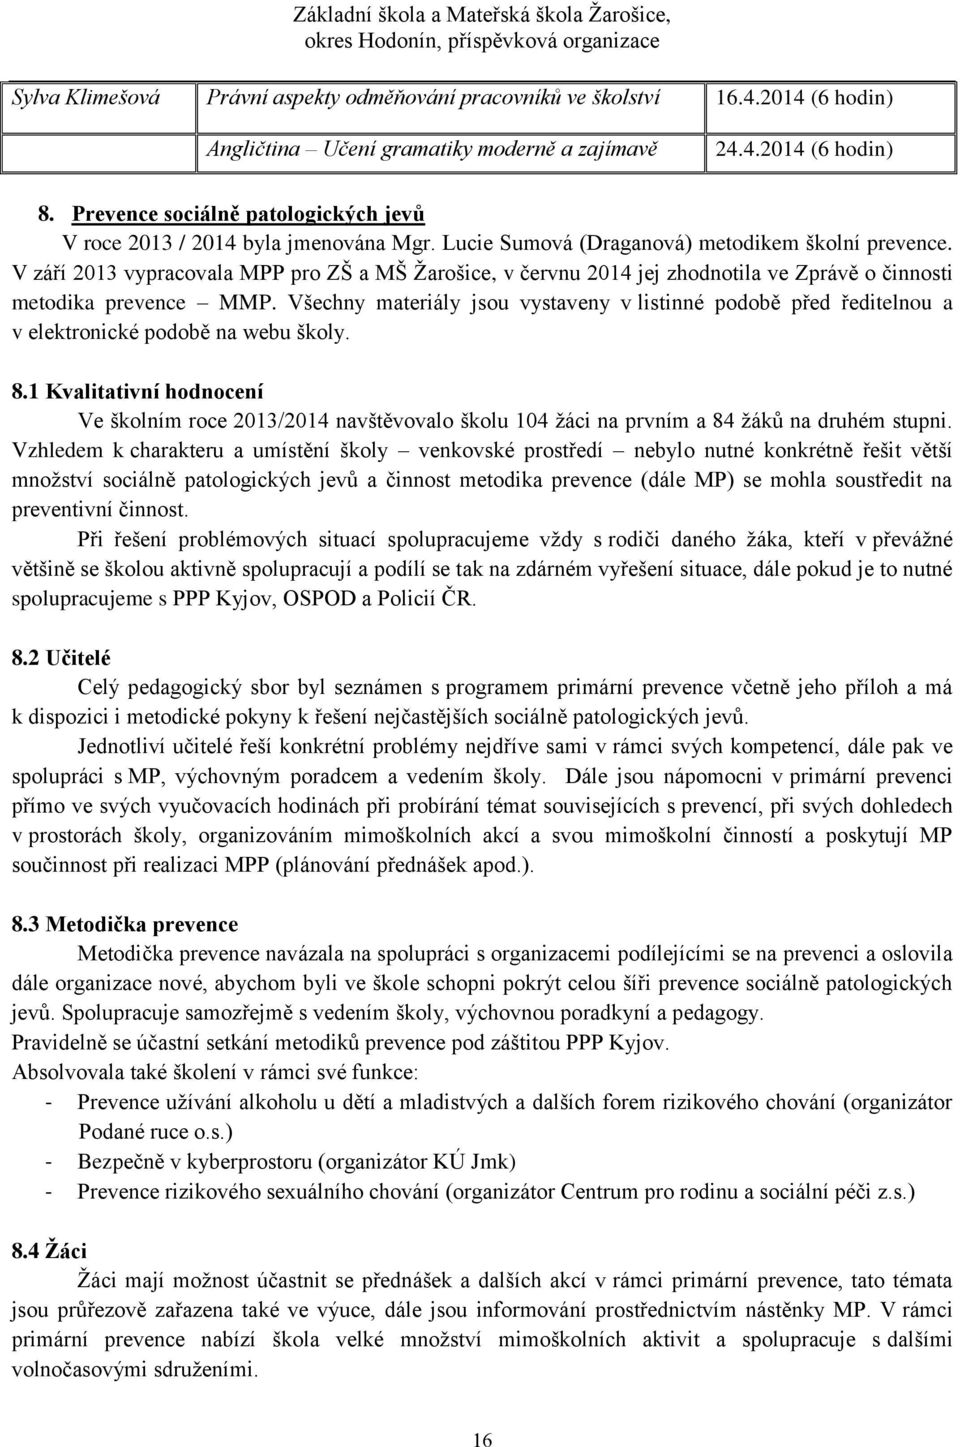 V září 2013 vypracovala MPP pro ZŠ a MŠ Žarošice, v červnu 2014 jej zhodnotila ve Zprávě o činnosti metodika prevence MMP.